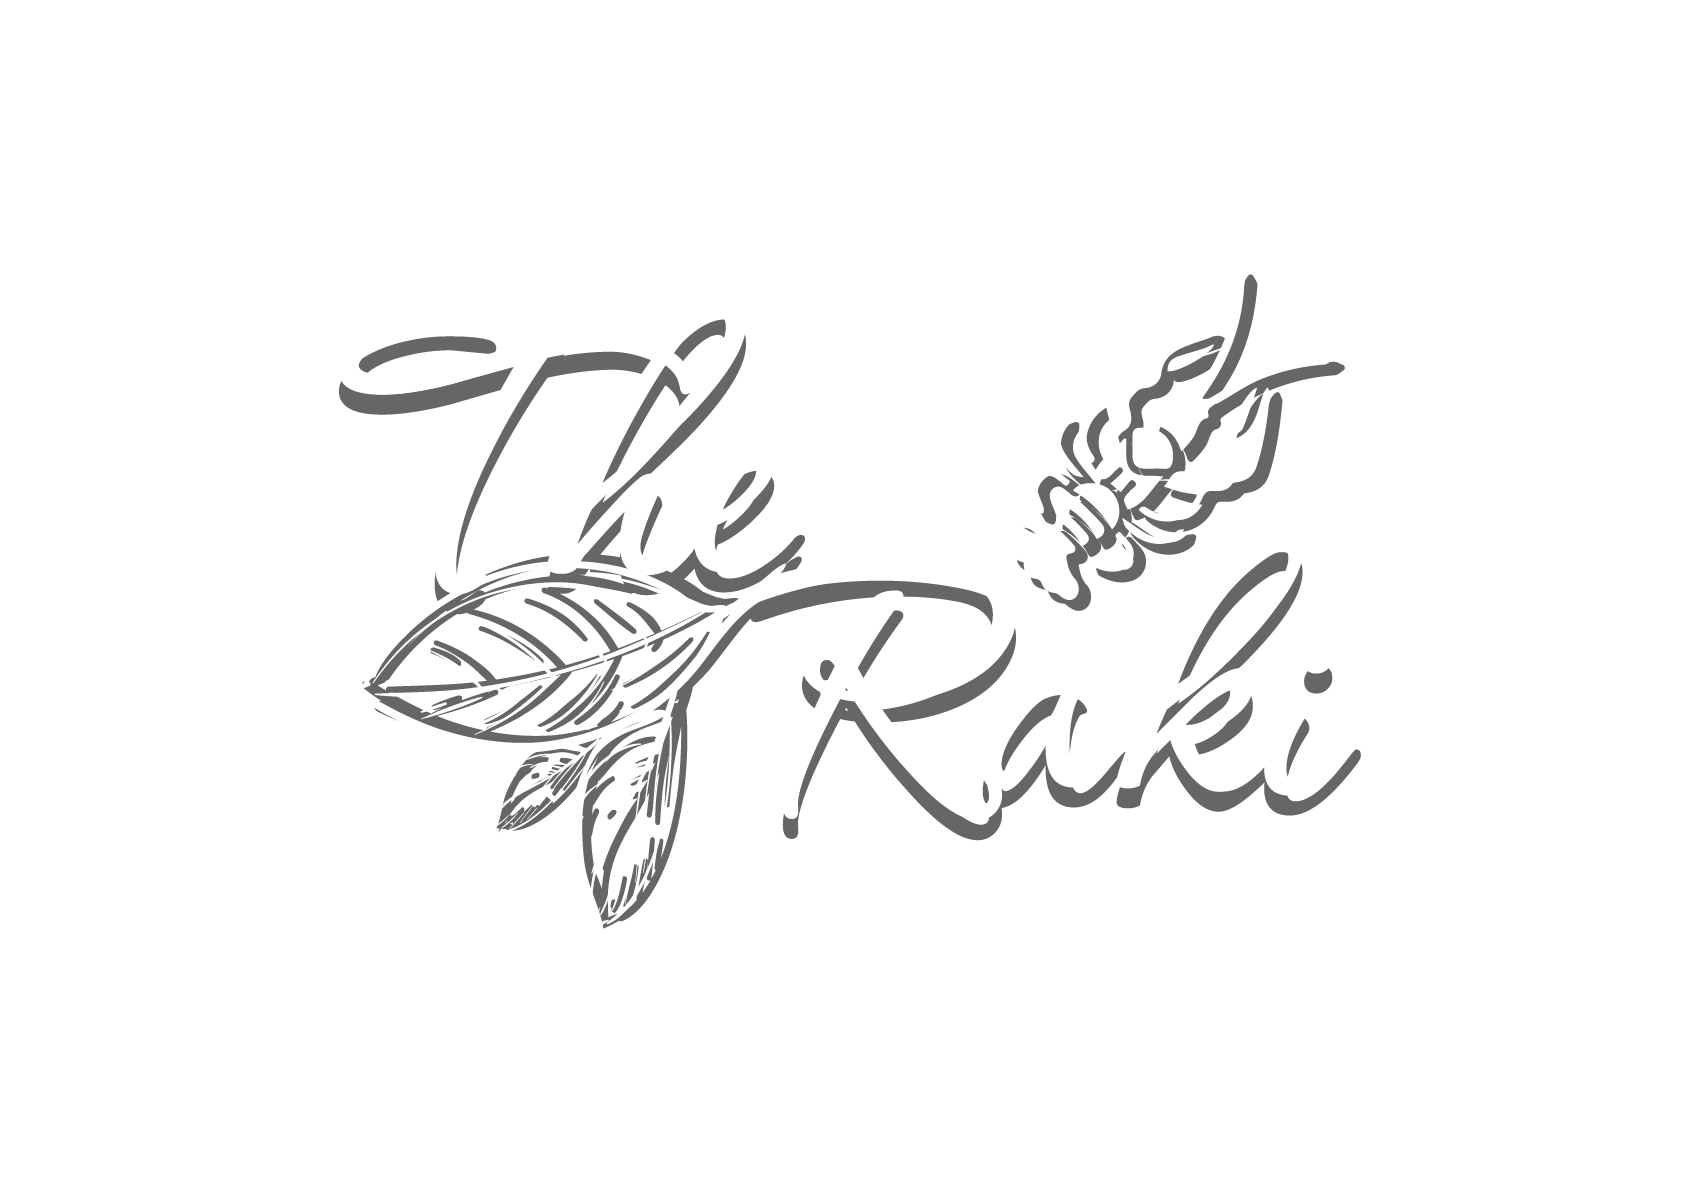 The Raki